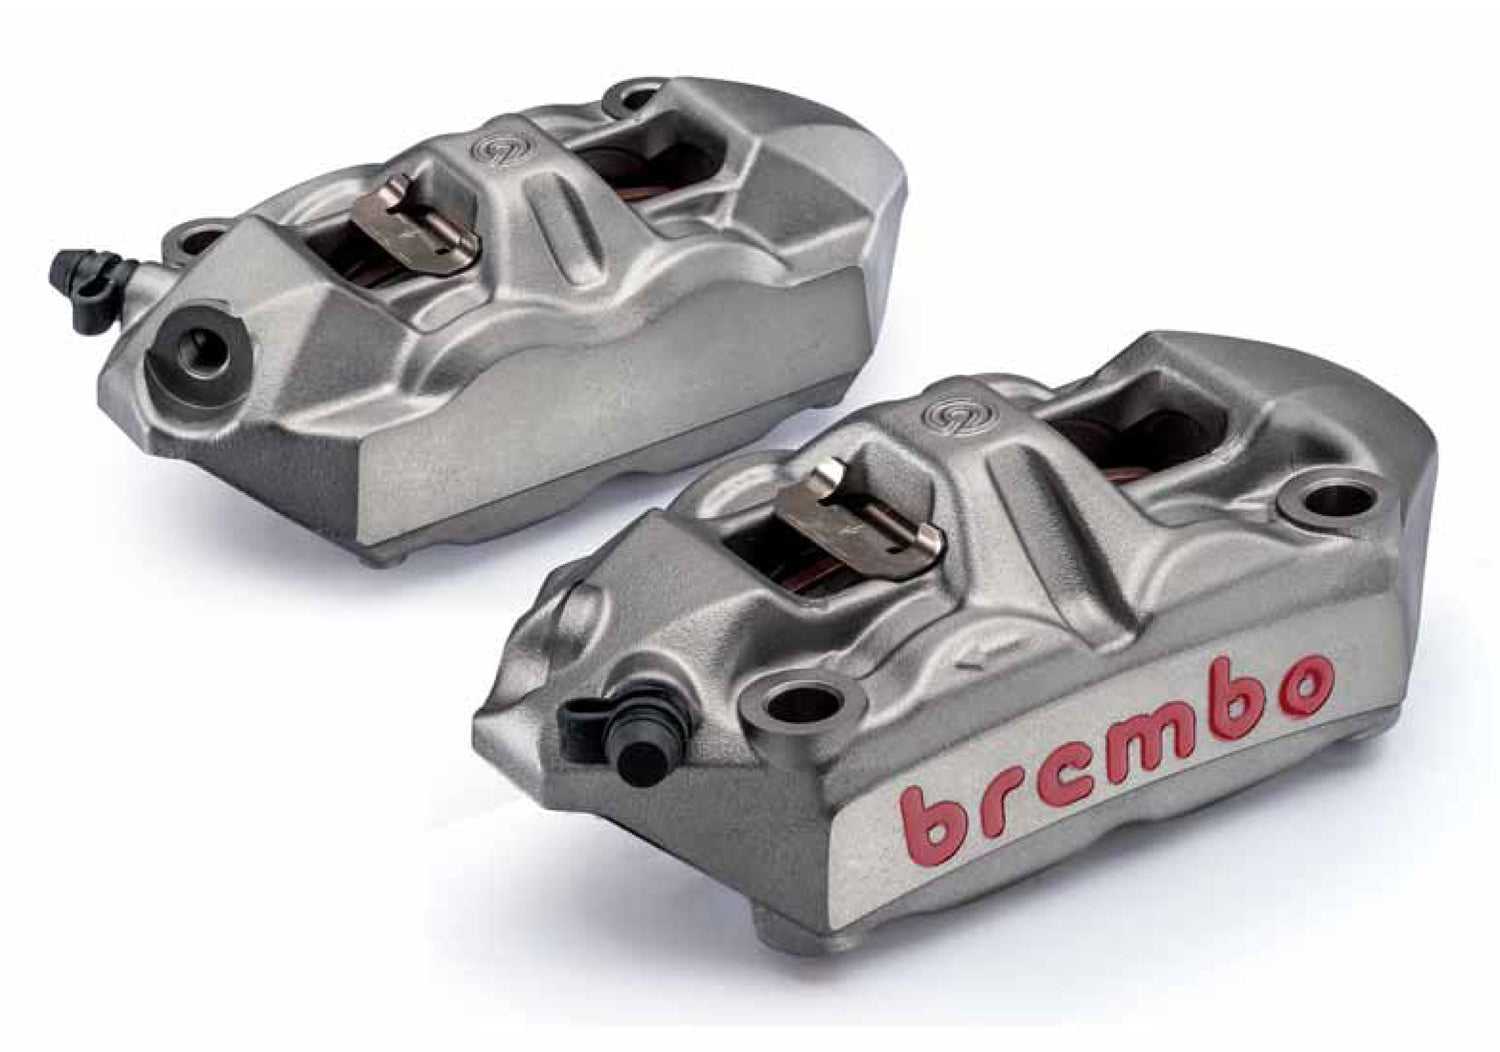 BREMBO, Brembo 100 mm radial M4 cast caliper kit